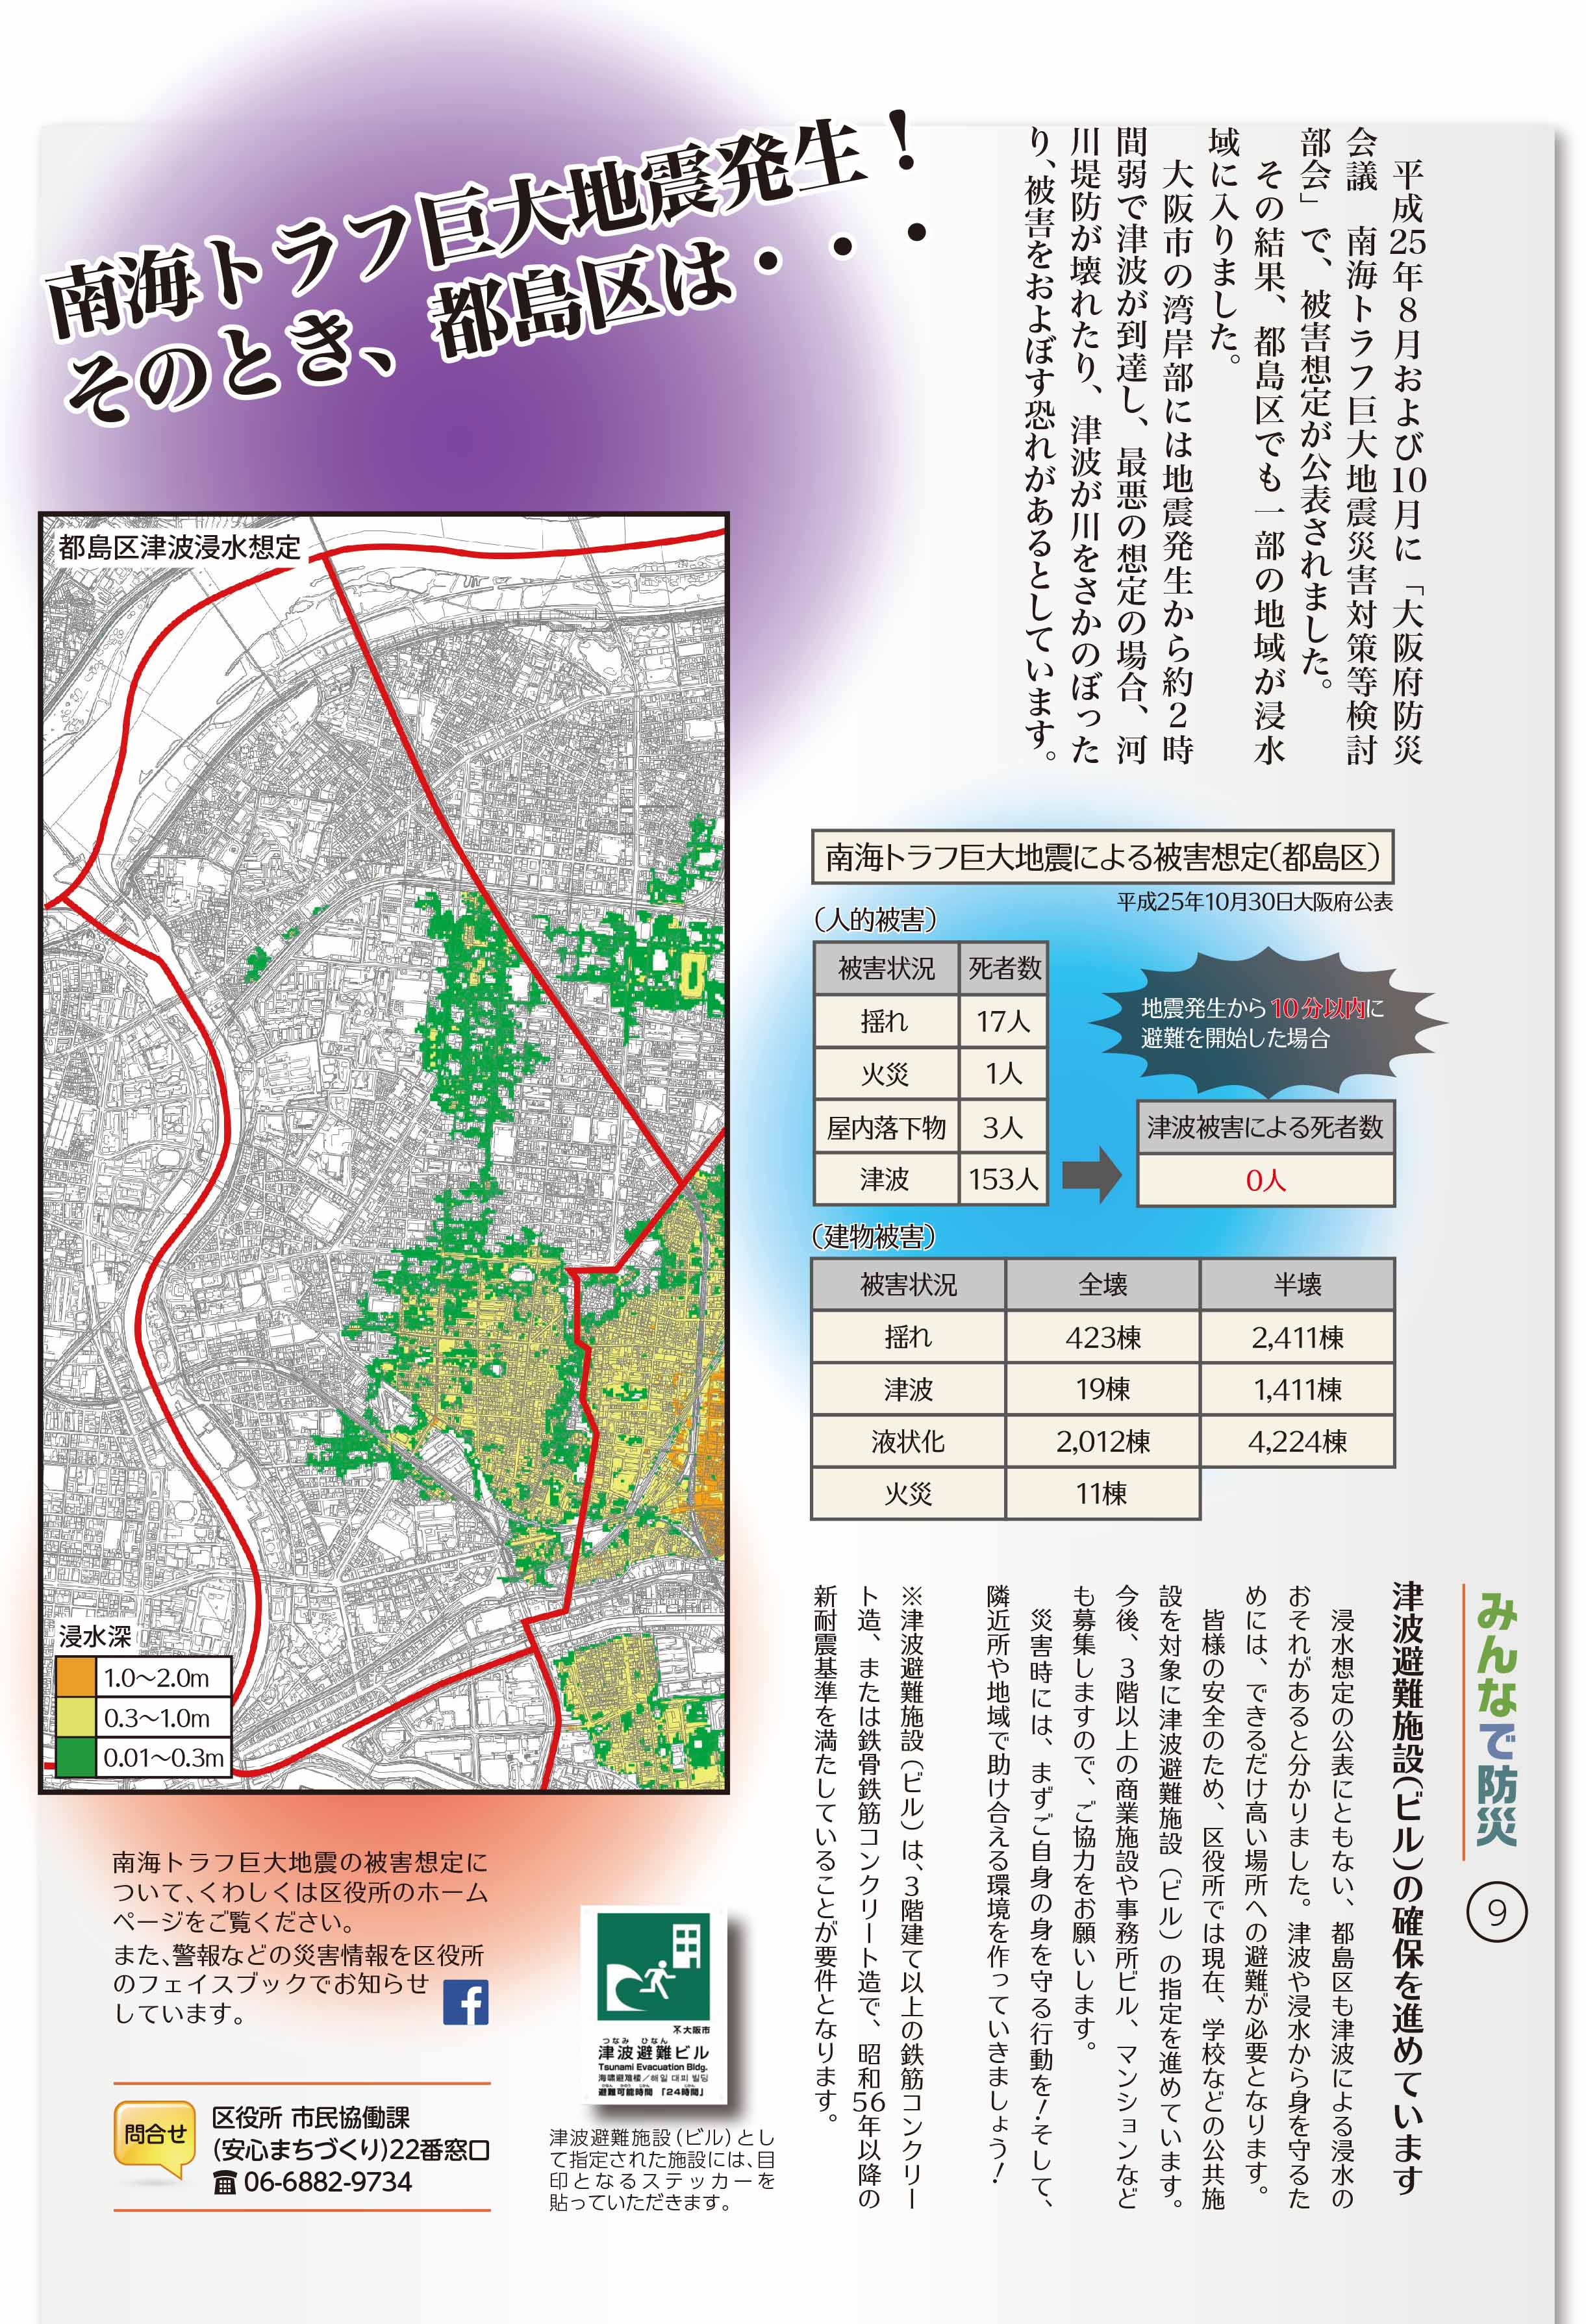 大阪市都島区 都島区域における南海トラフ巨大地震の被害想定 人的被害 建物被害 について 調べる 想定される被害